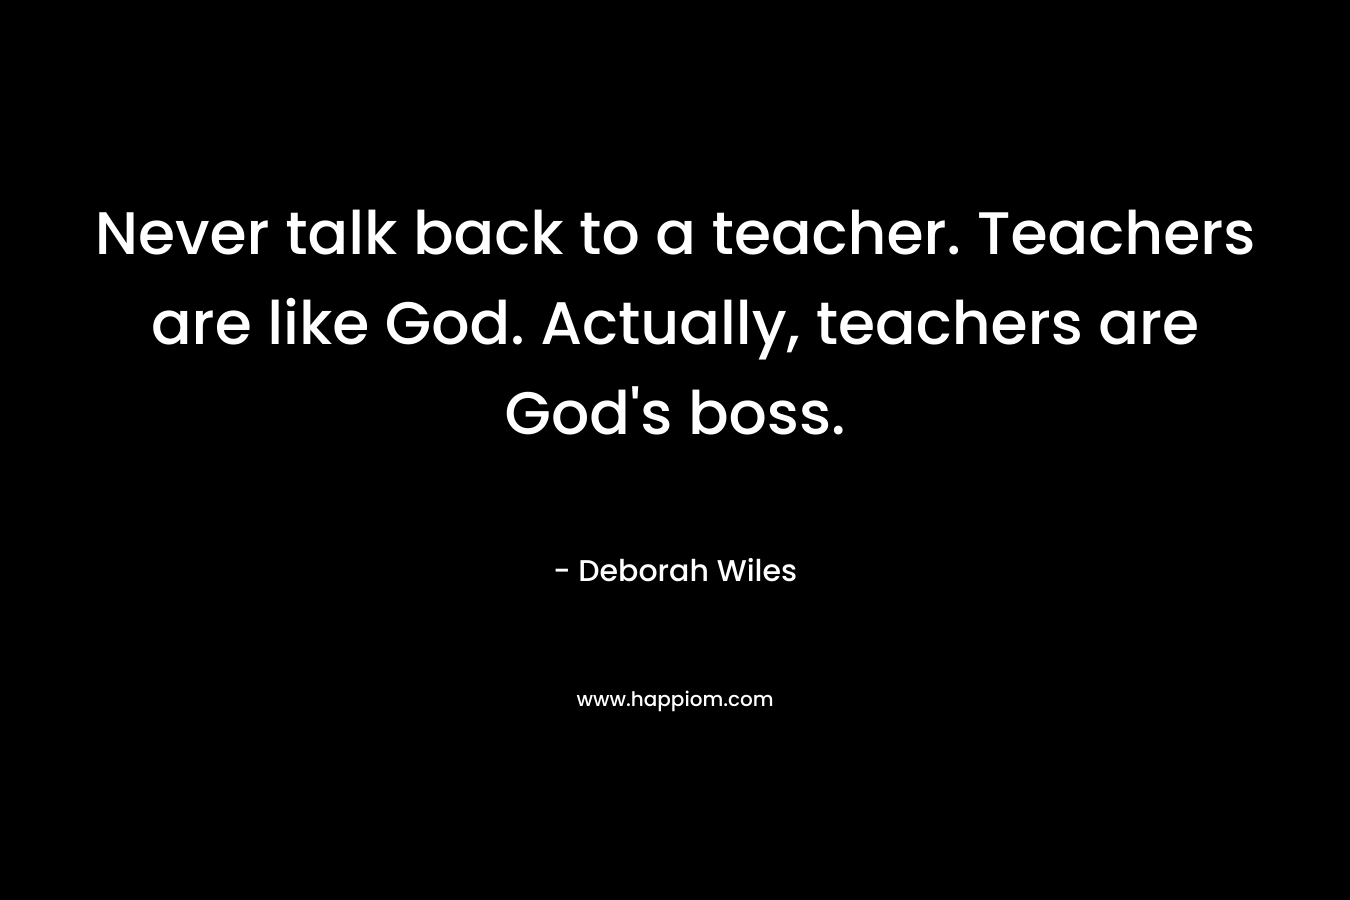 Never talk back to a teacher. Teachers are like God. Actually, teachers are God's boss.